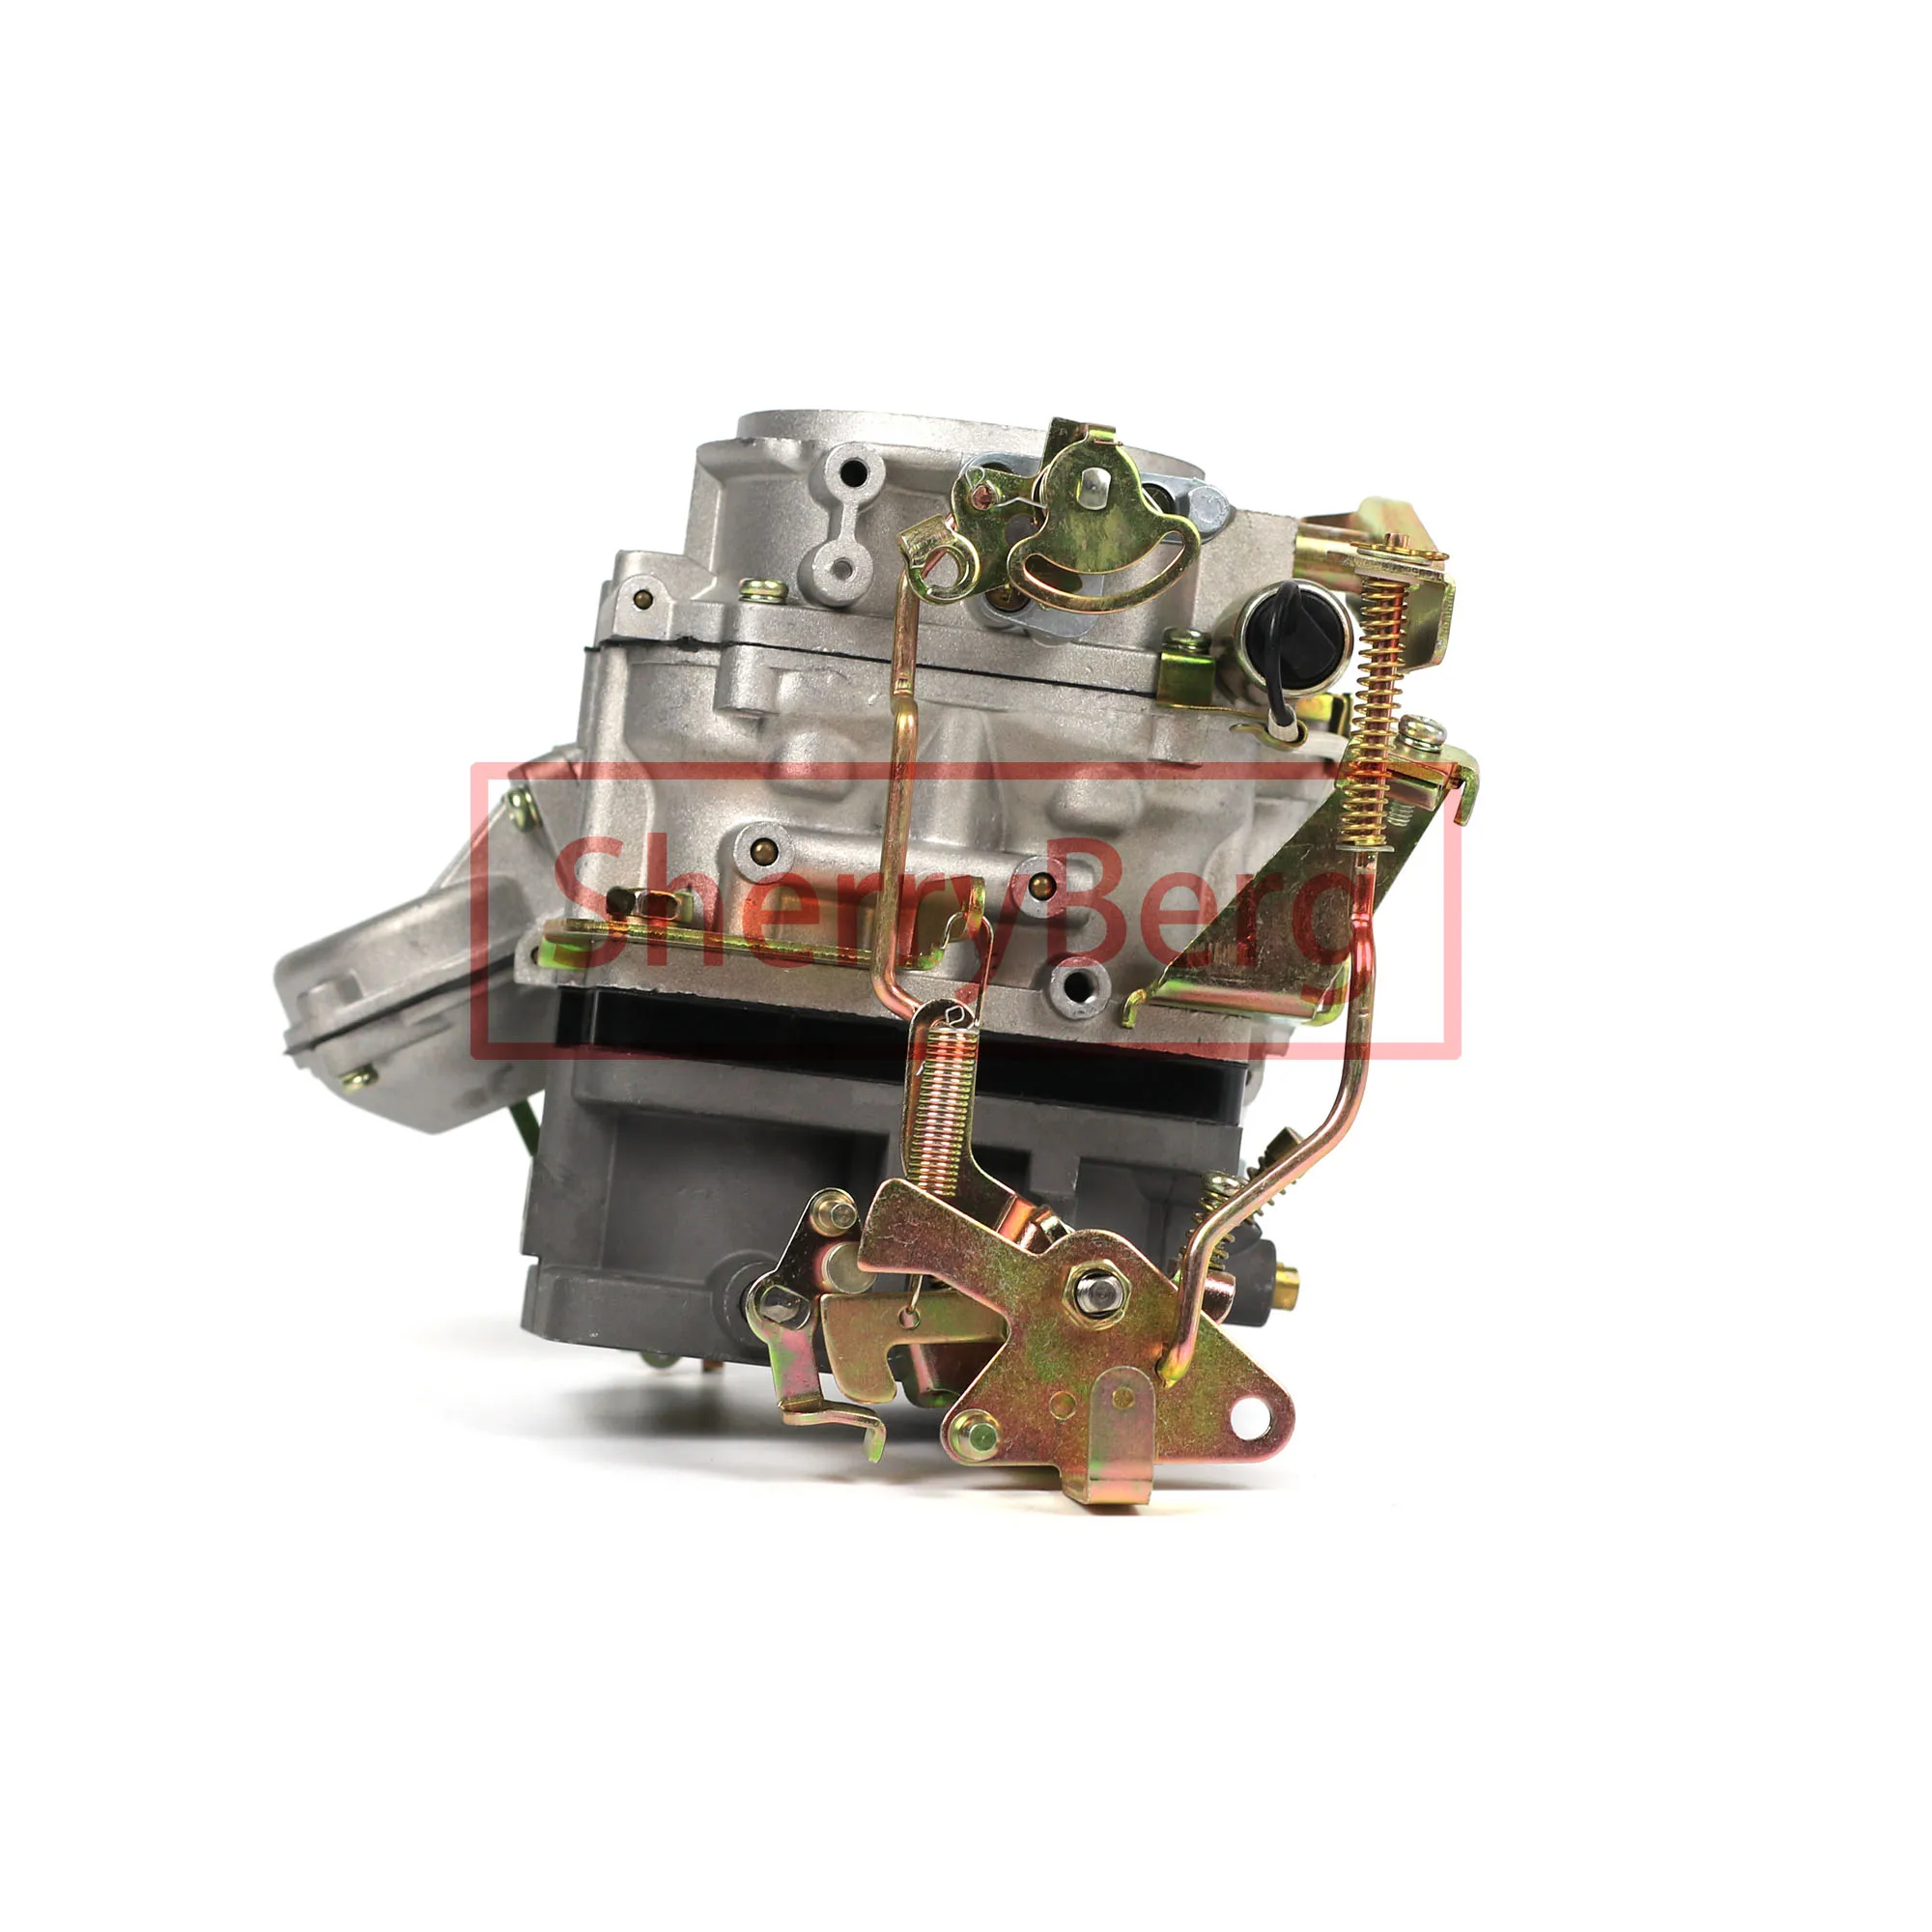 Карбюратор SherryBerg CARB carburetor для двигателя toyota 2F Landcruiser карбюратор хорошее качество carby и бесплатная доставка